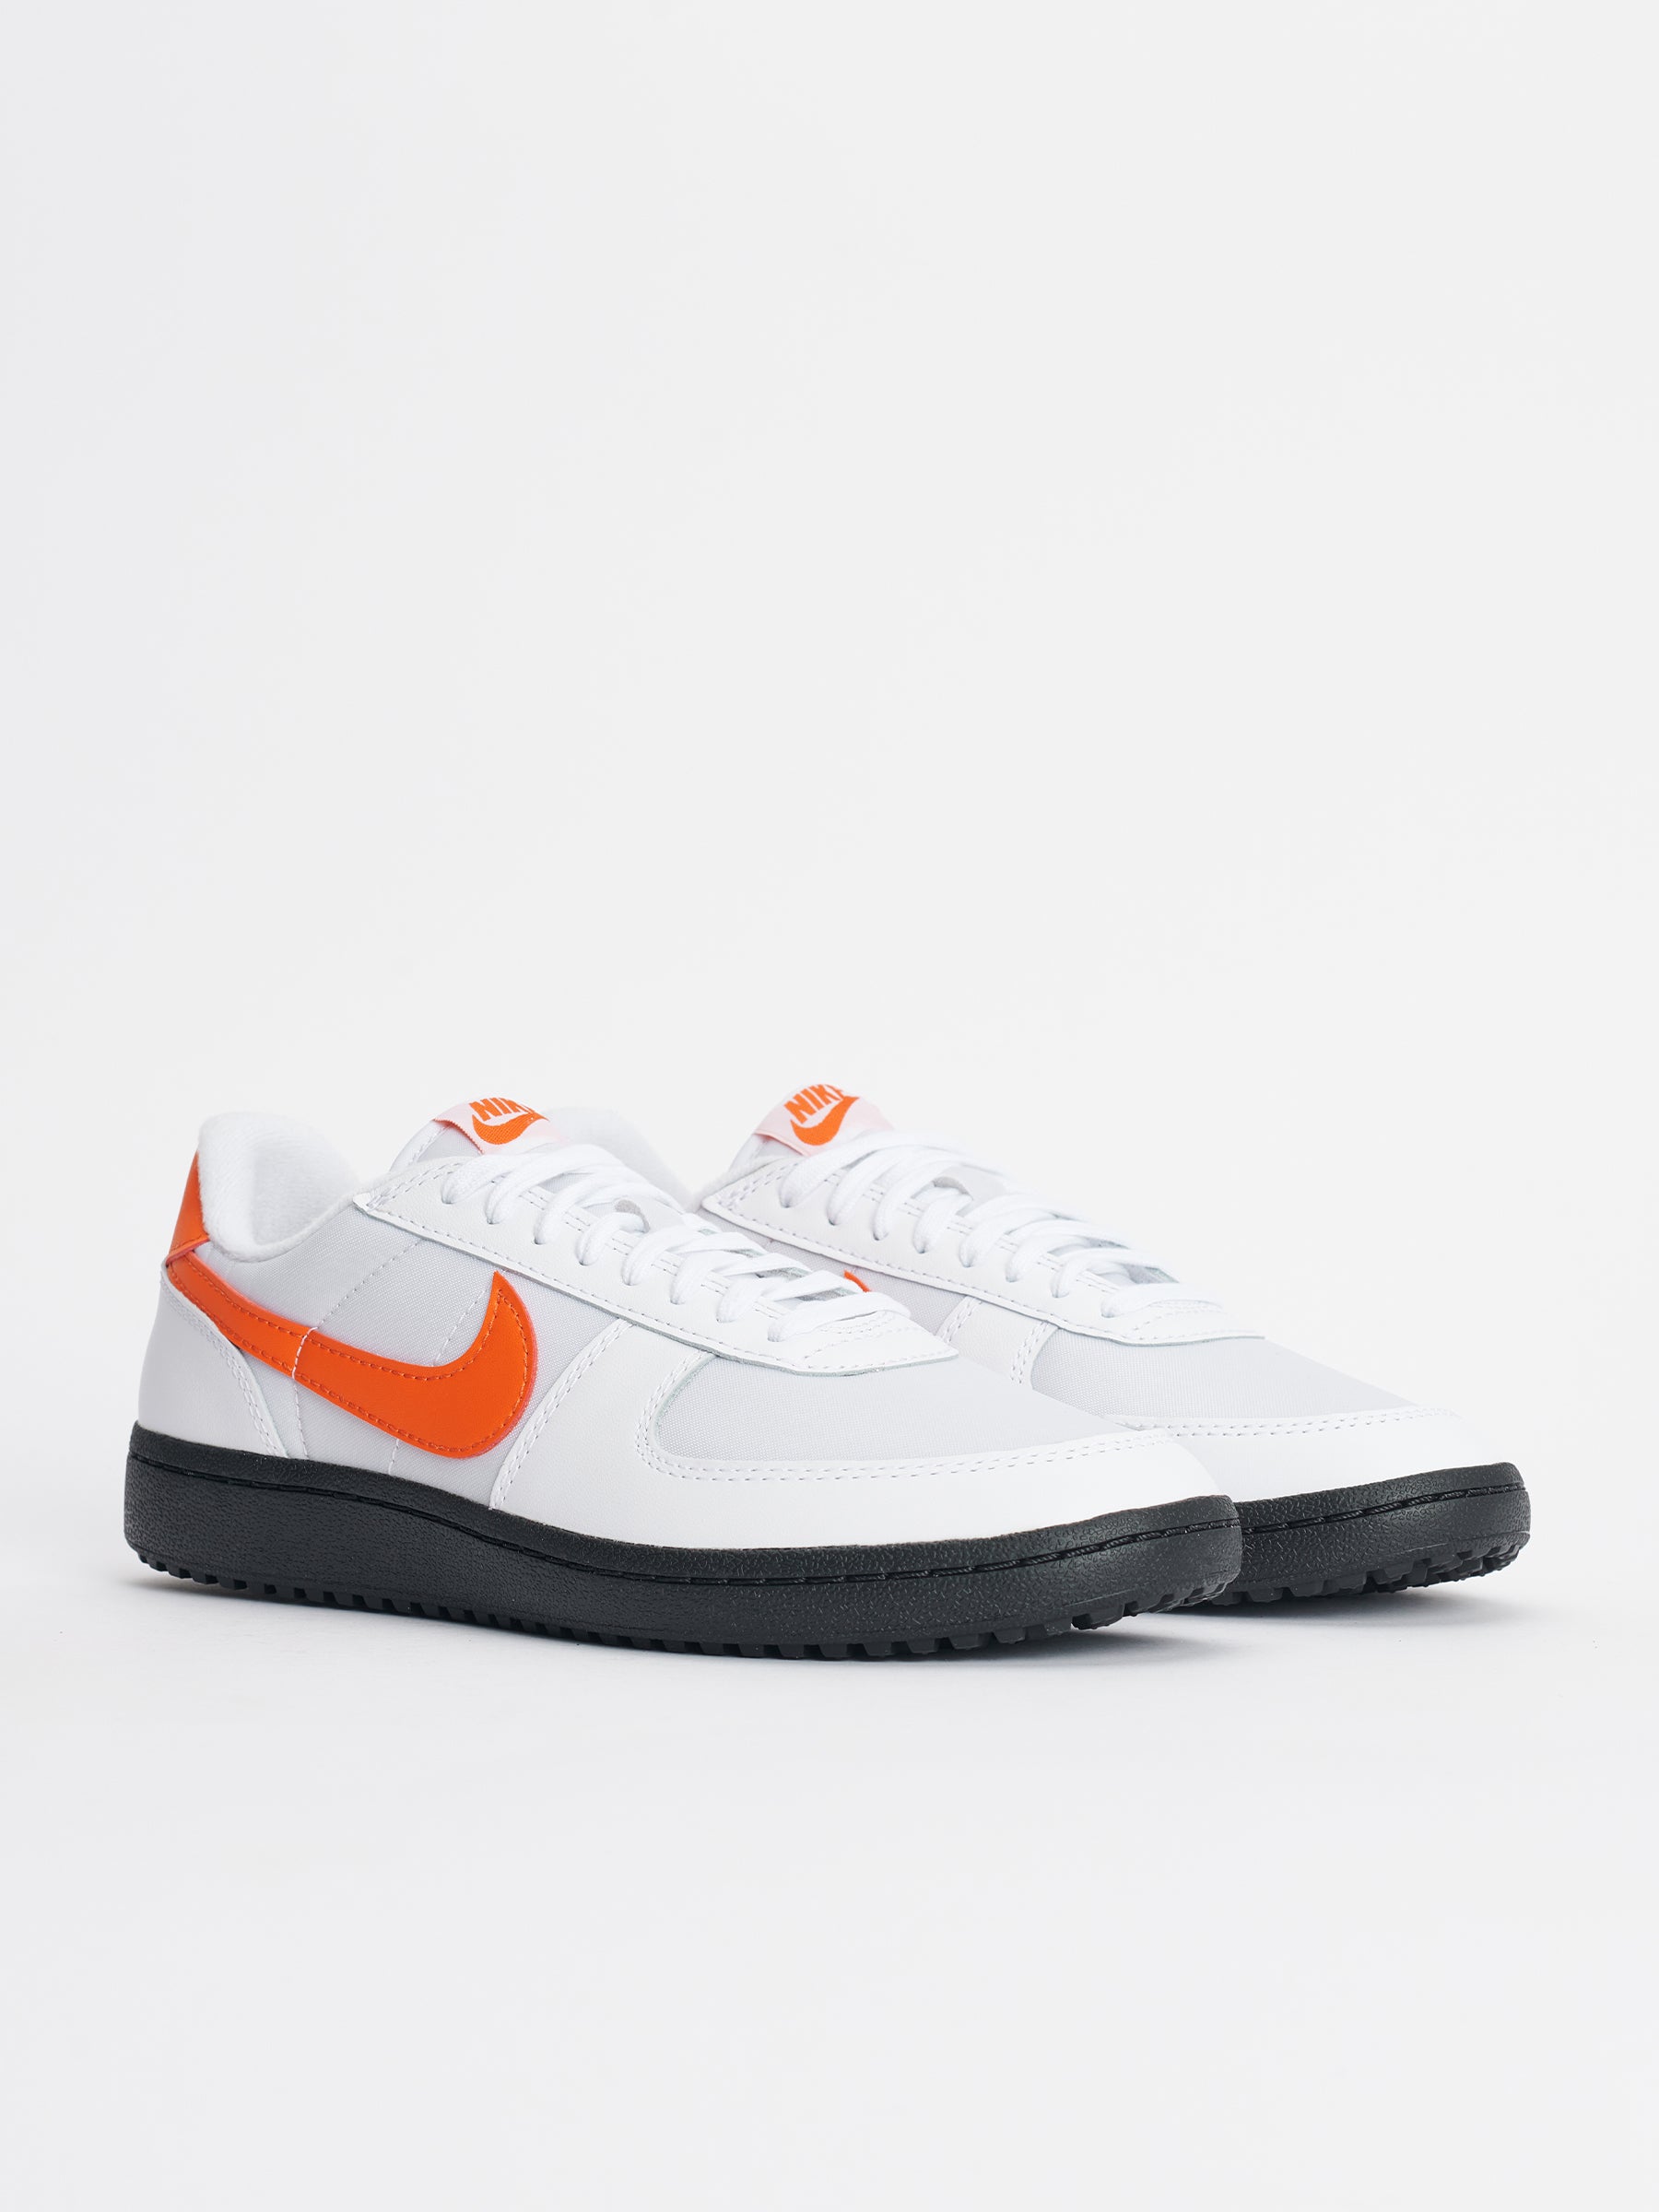 Nike Field General 82 SP White / Orange Blaze